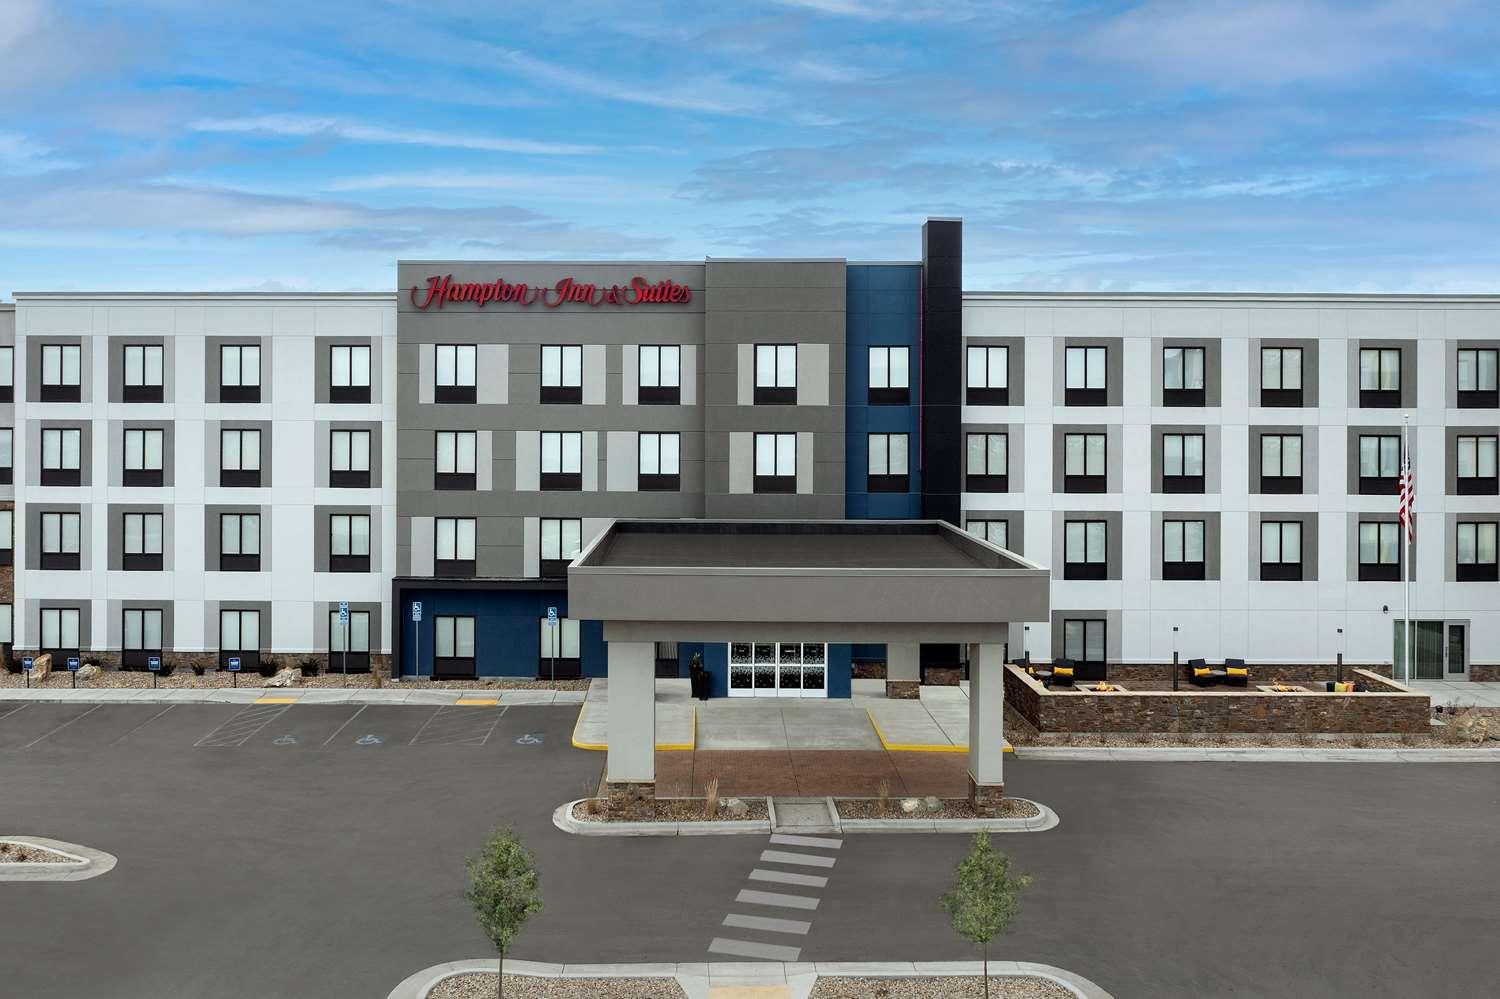 Hampton Inn & Suites Rapid City Rushmore in Rapid City, SD